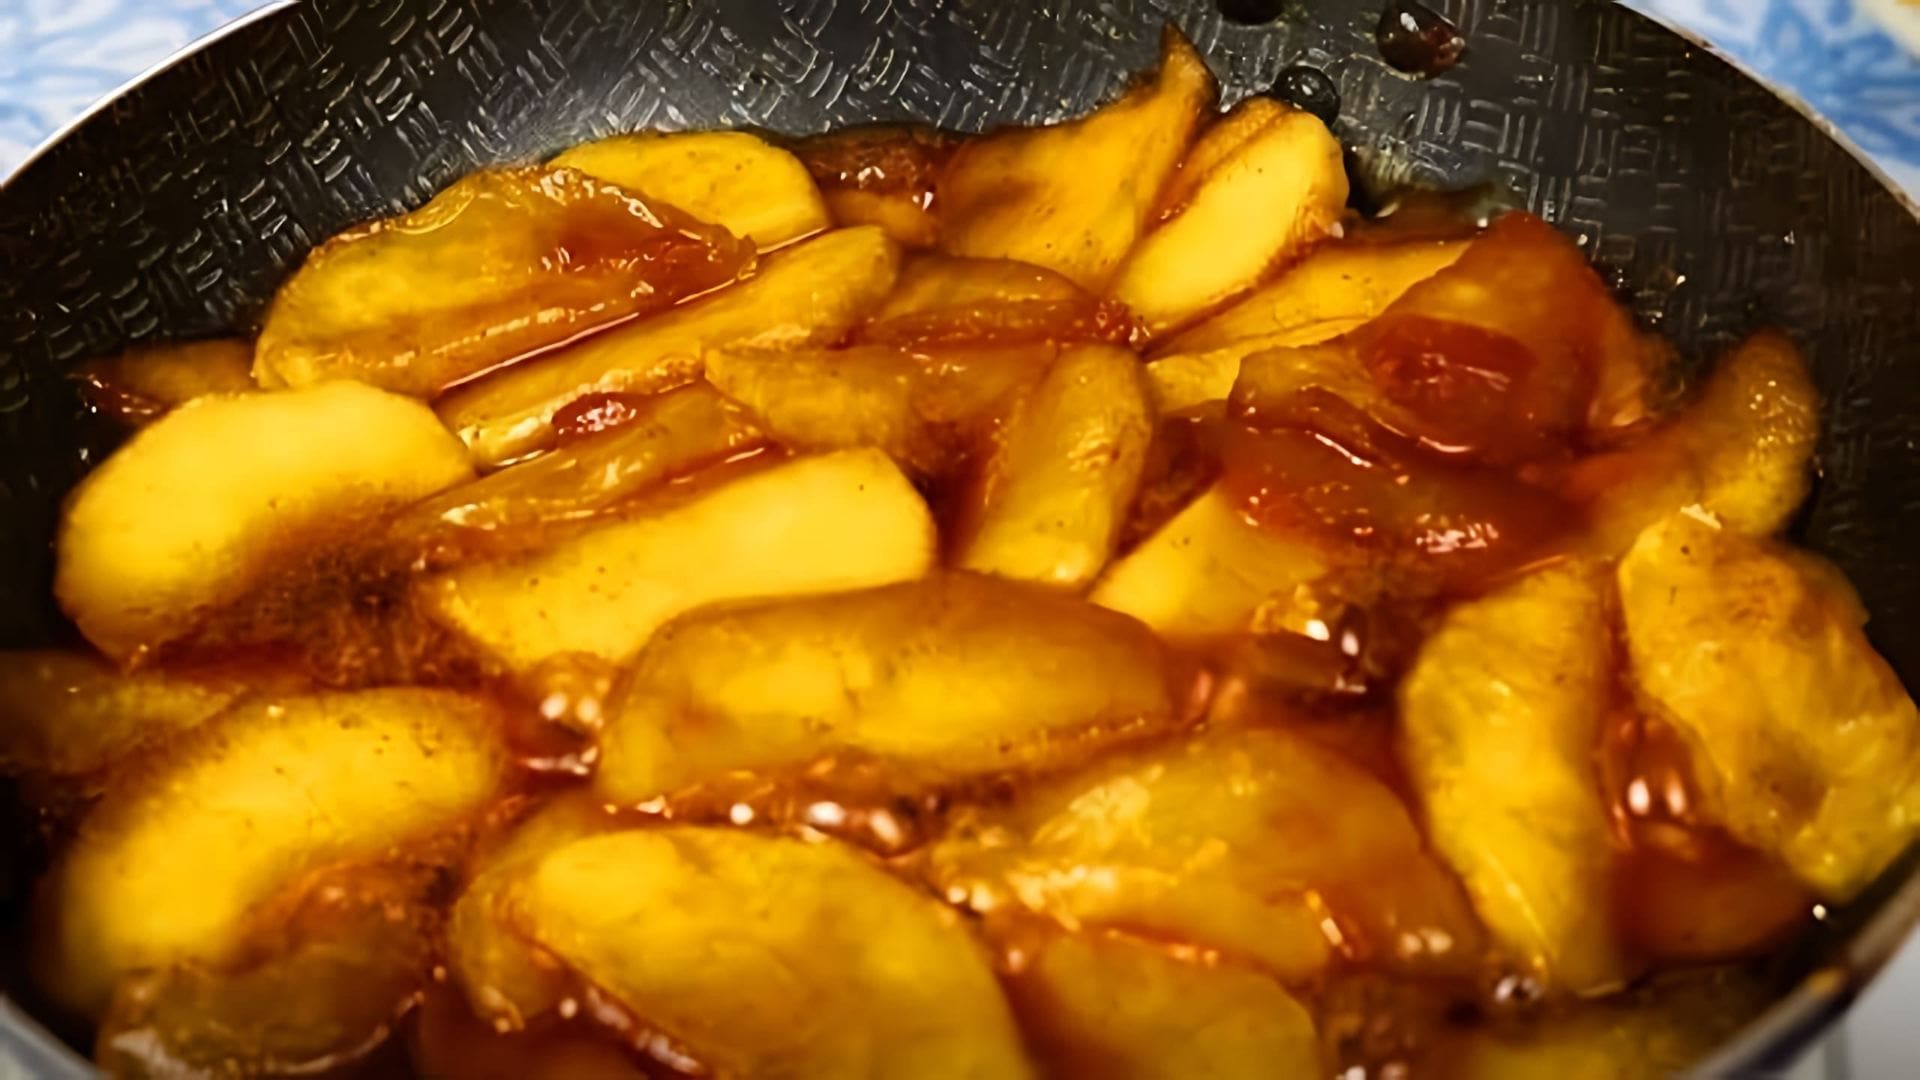 В этом видео демонстрируется процесс карамелизации яблок для различных блюд, таких как пирожки, блинчики и пироги